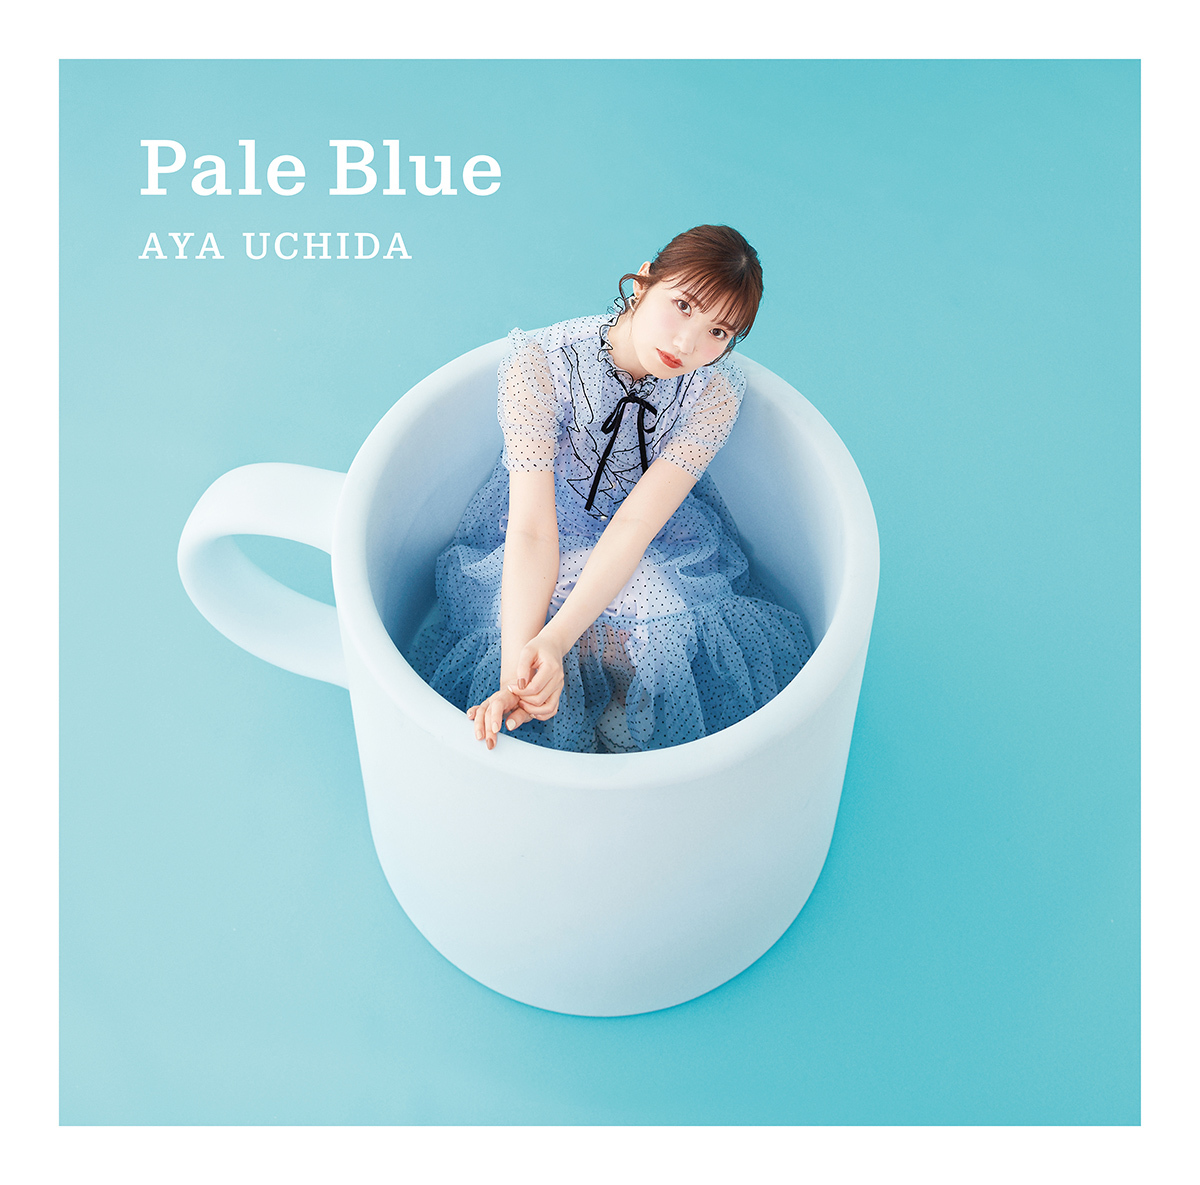 内田彩の5thシングル「Pale Blue」初回限定盤